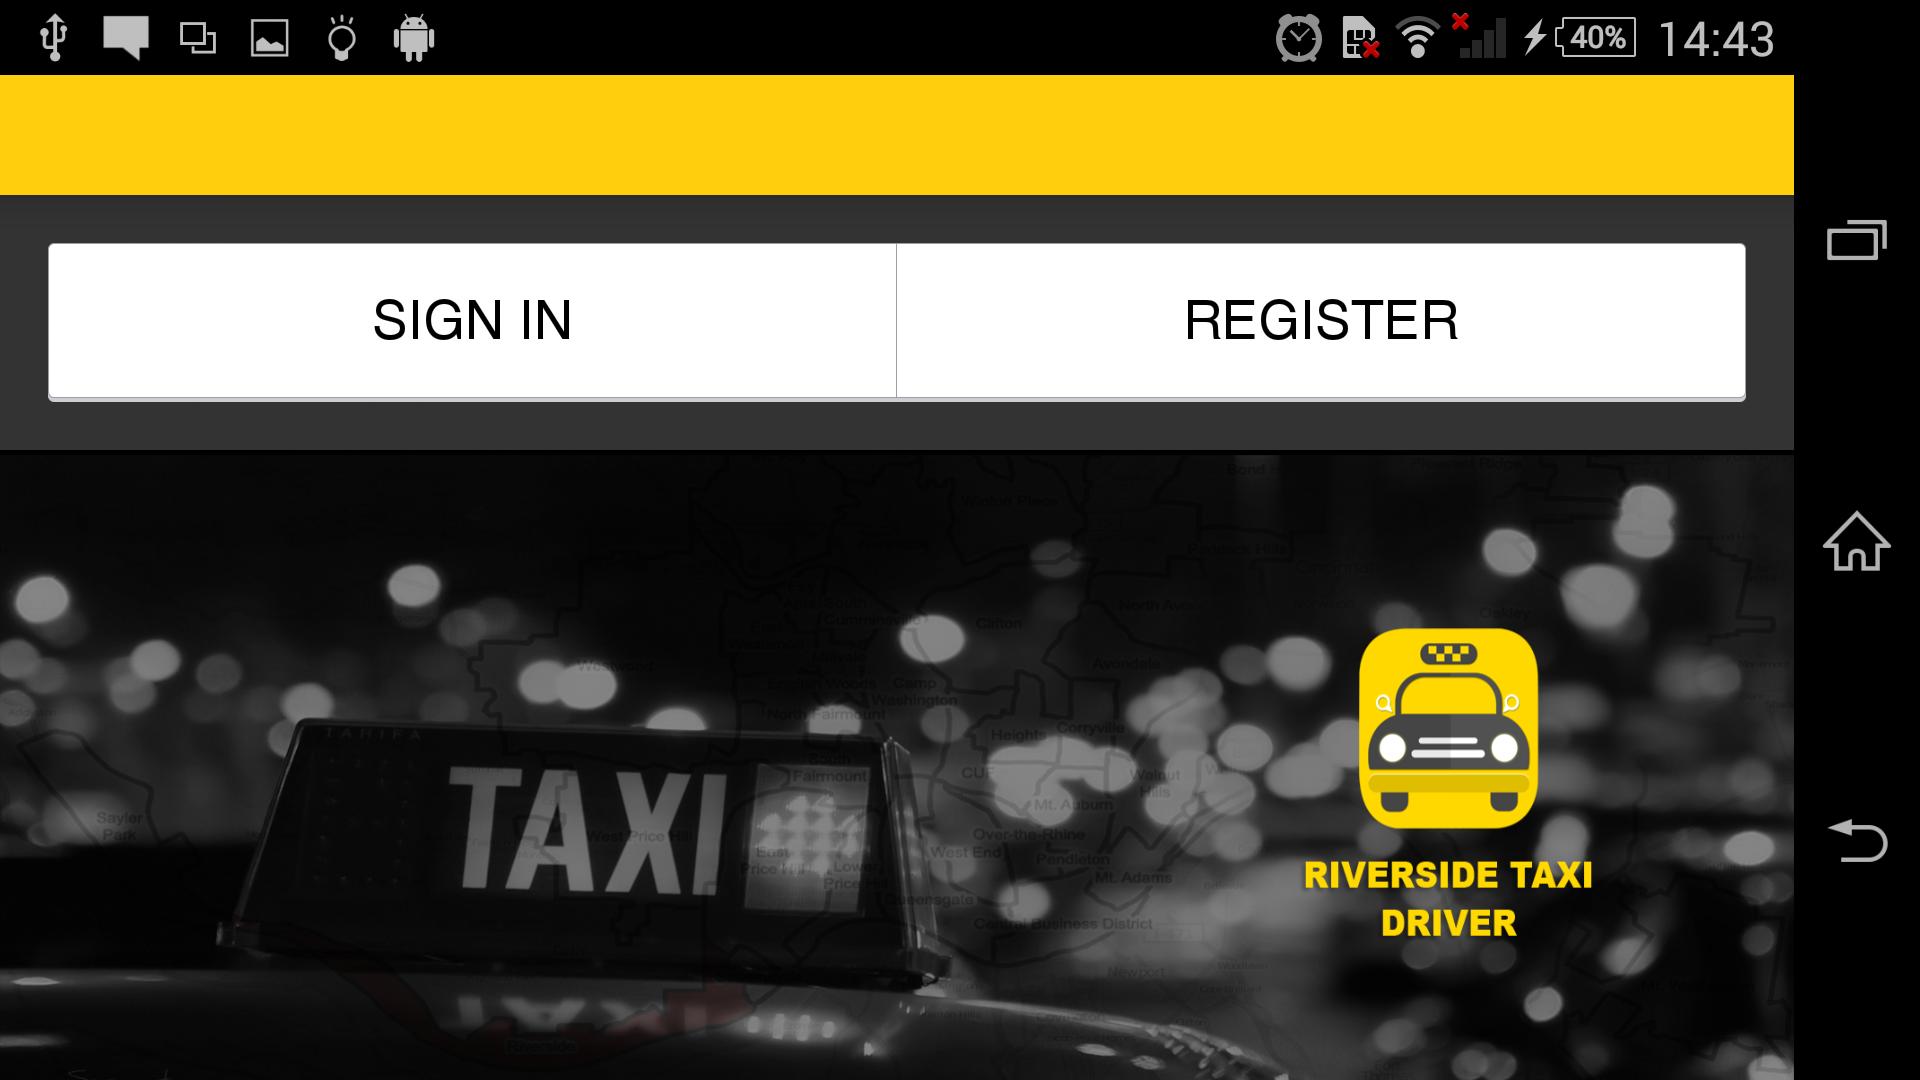 Такси драйвер rfhnf. Приложение такси драйвер. Такси драйвер в каком городе находится. Такси драйвер авторизация